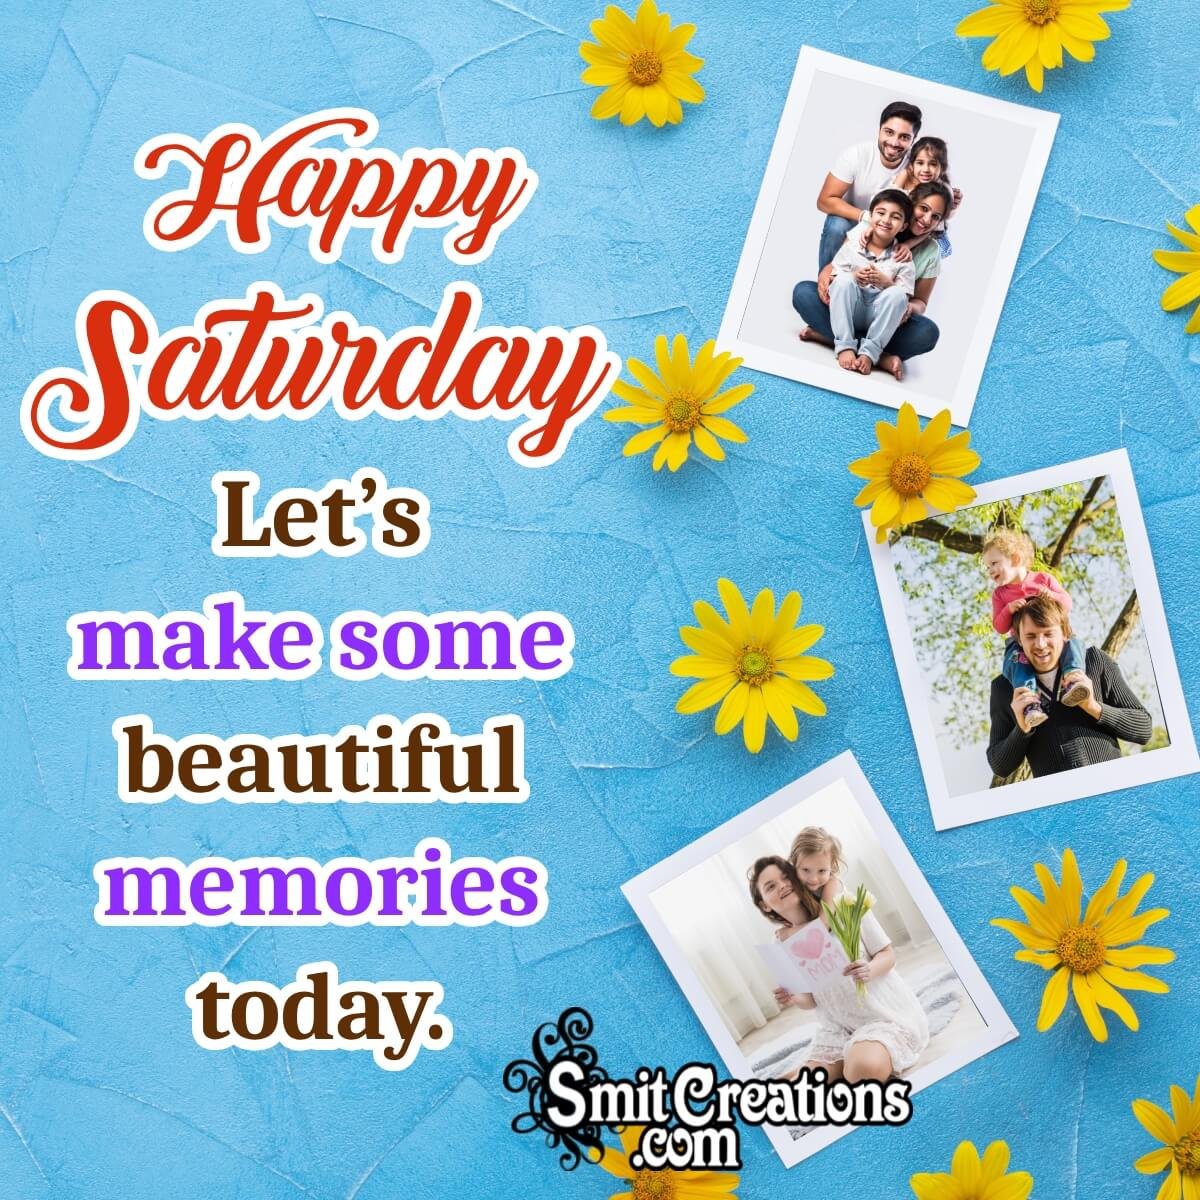 Happy Saturday Wish Image